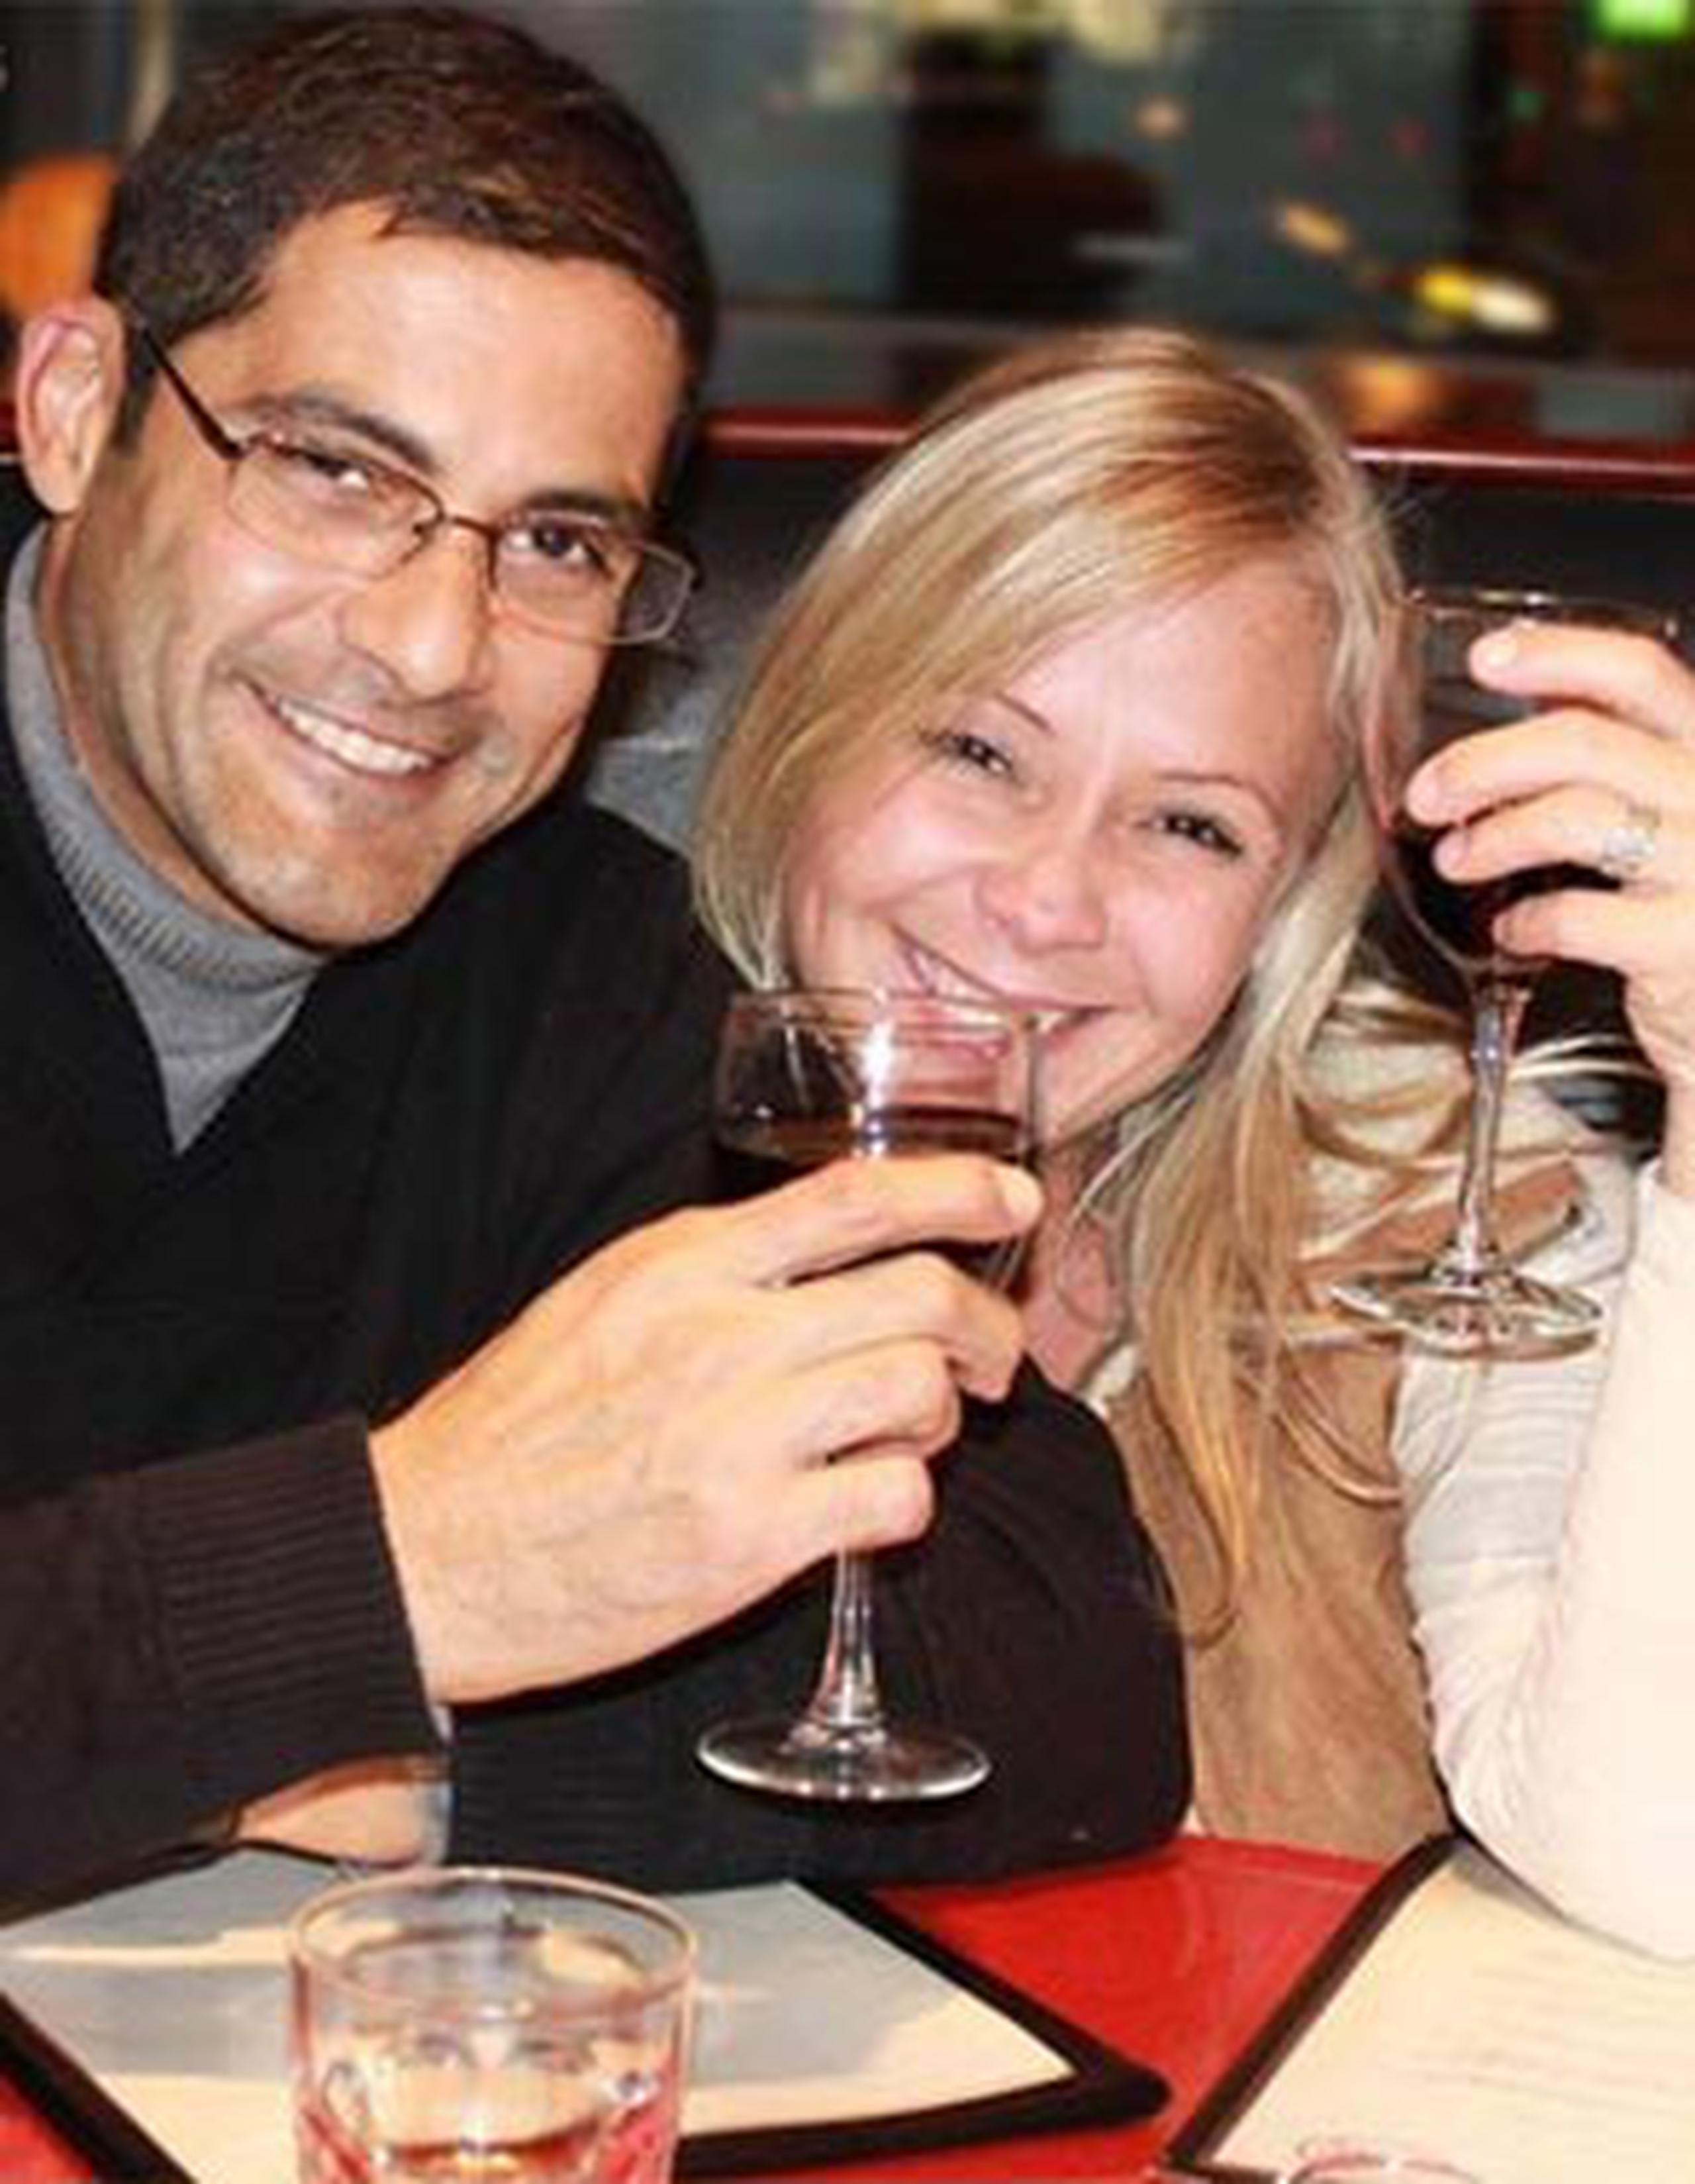 En las páginas sociales de Baigés aparece una fotografía en la que se les ve disfrutando un vino tinto en un restaurante como cualquier pareja que comparte a solas, pero en Toronto, Canadá. (Facebook: Marisa Baiges)